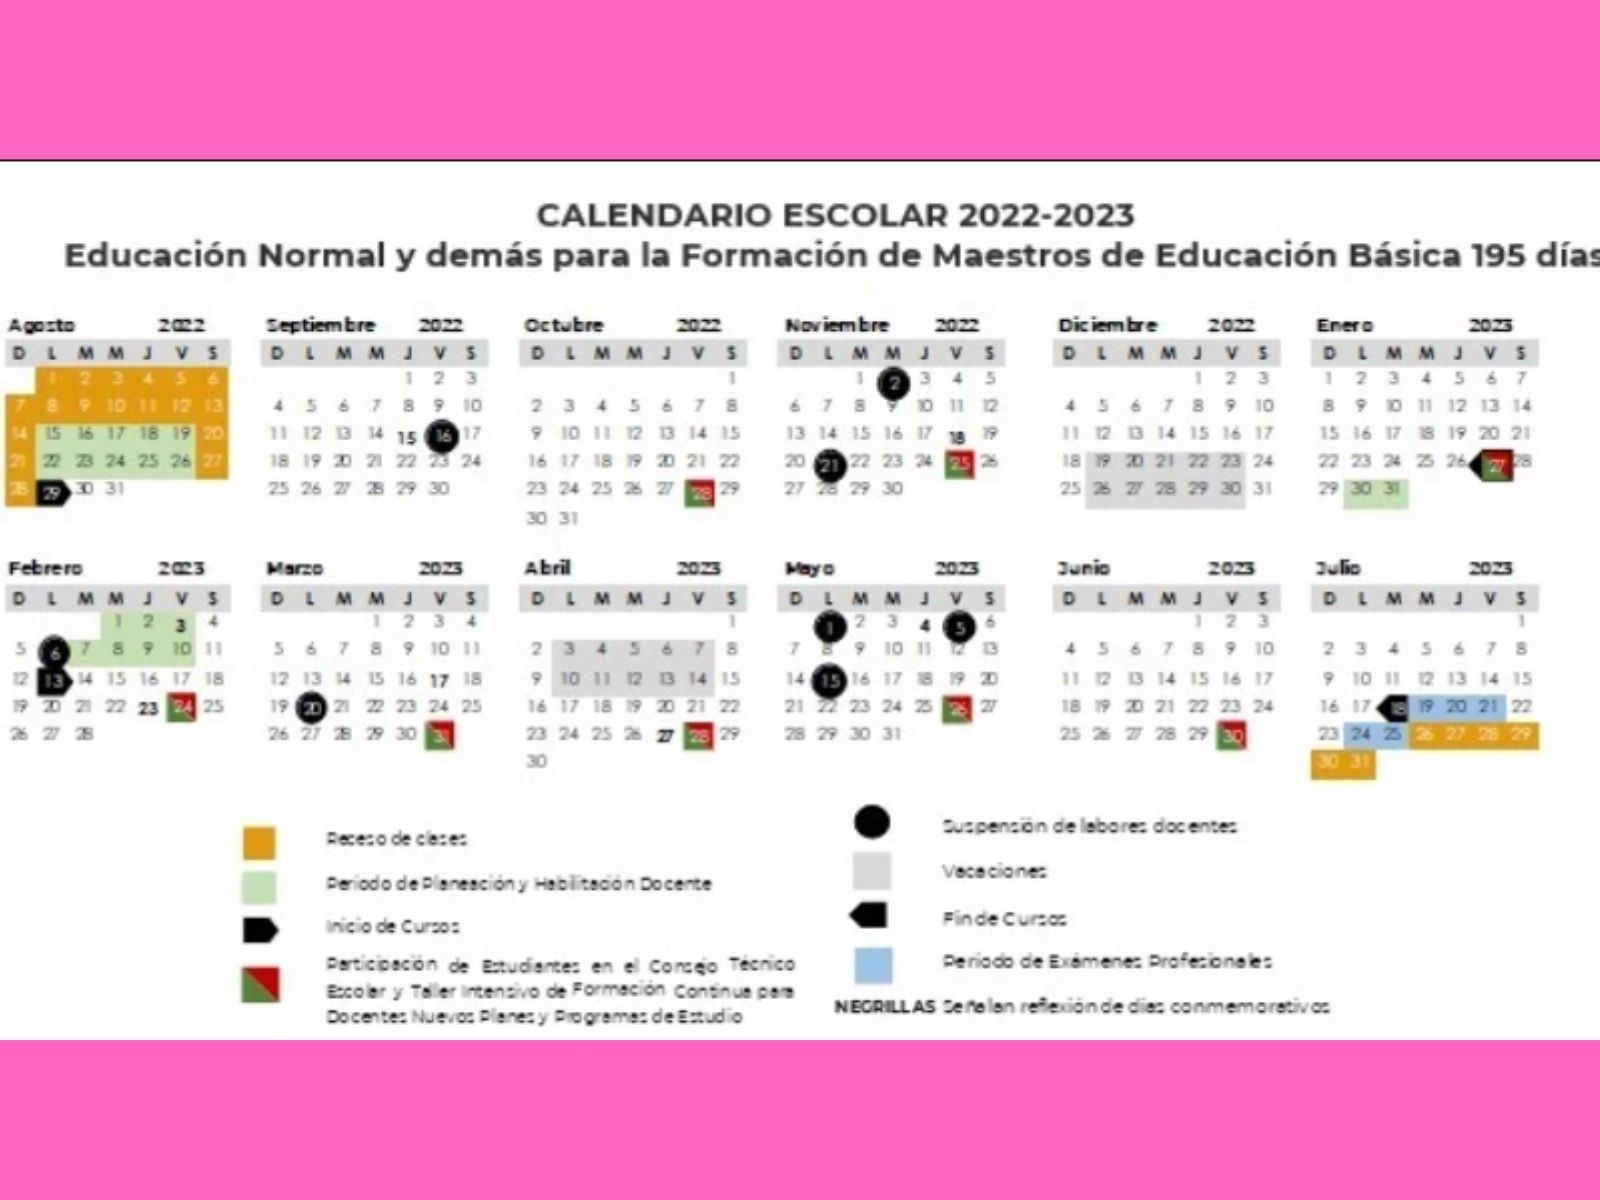 Calendario escolar 2022 2023 vacaciones días feriados inicio de clases y otras fechas